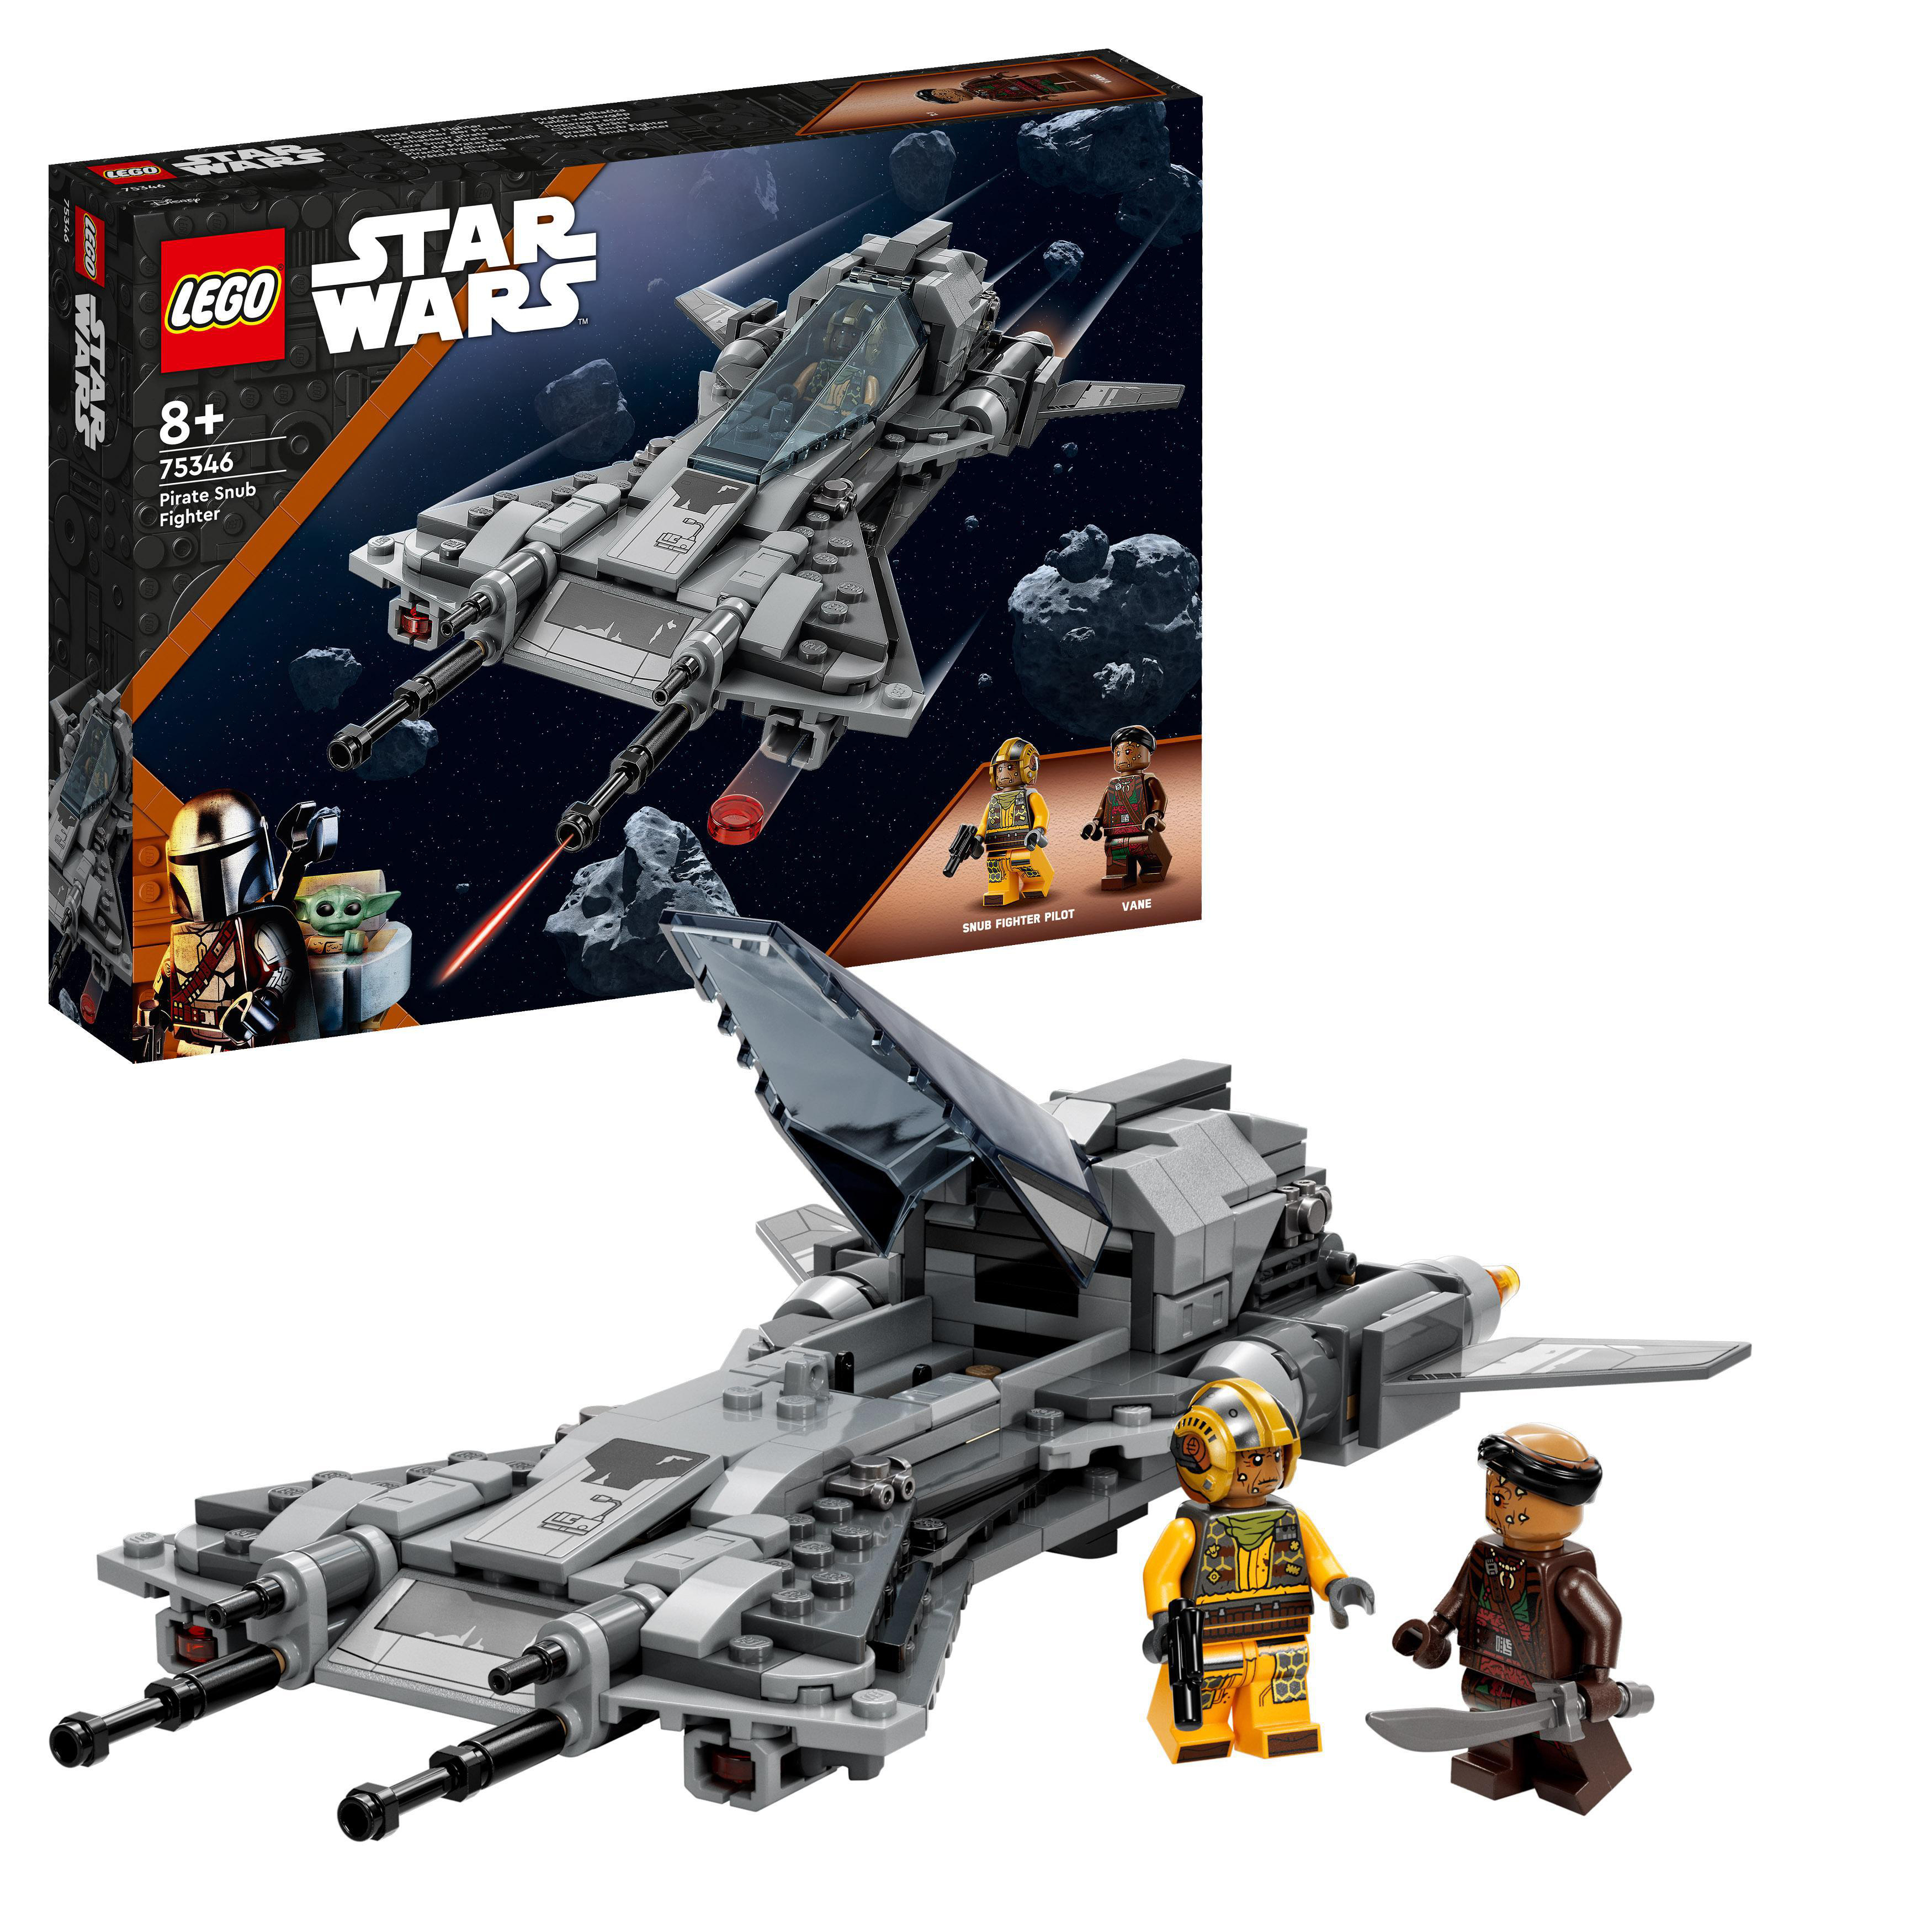 Mehrfarbig 75346 Piraten LEGO der Wars Bausatz, Star Snubfighter